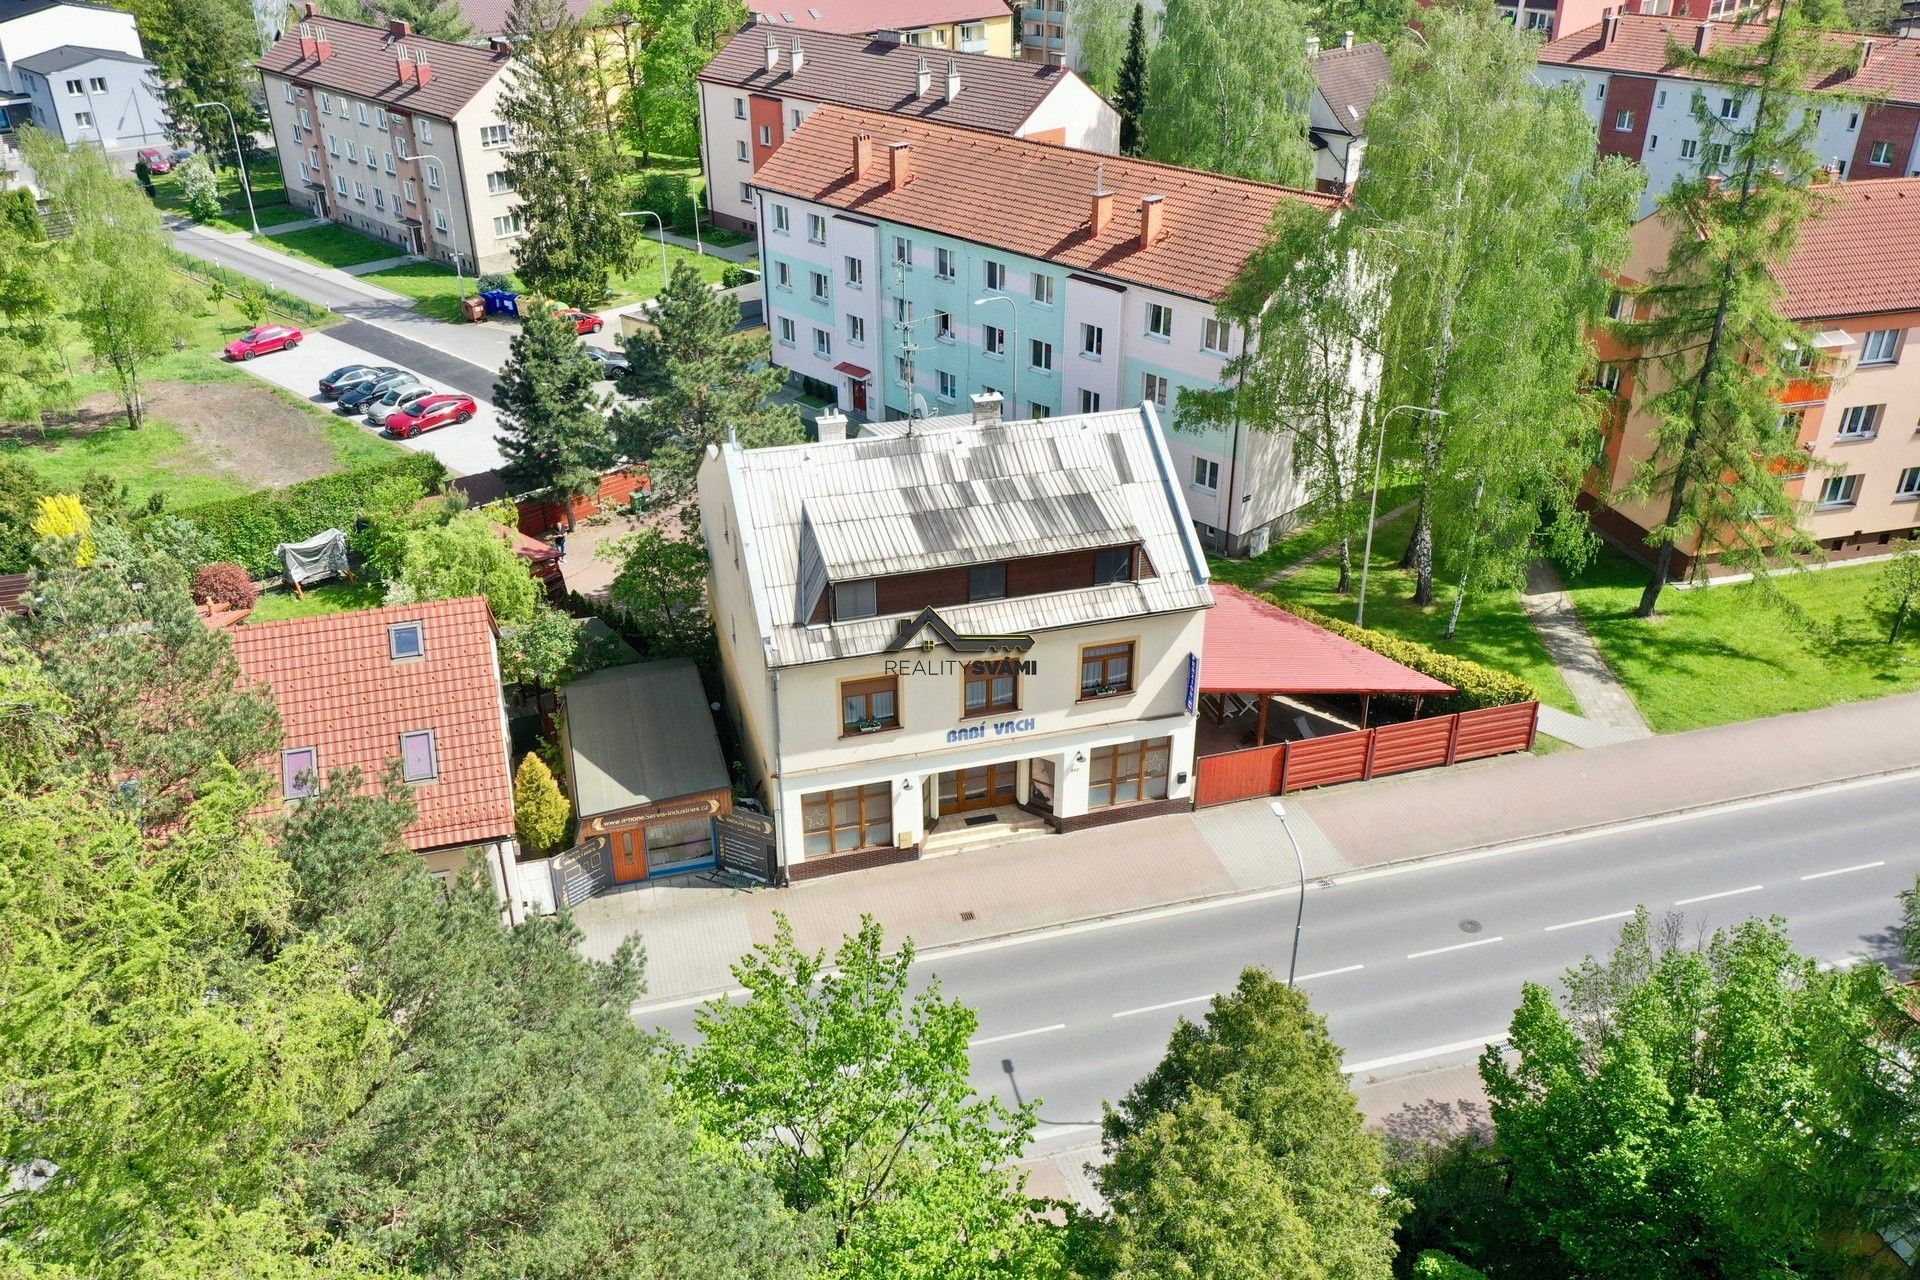 Ubytovací zařízení, Hlavní, Frýdlant nad Ostravicí, 416 m²